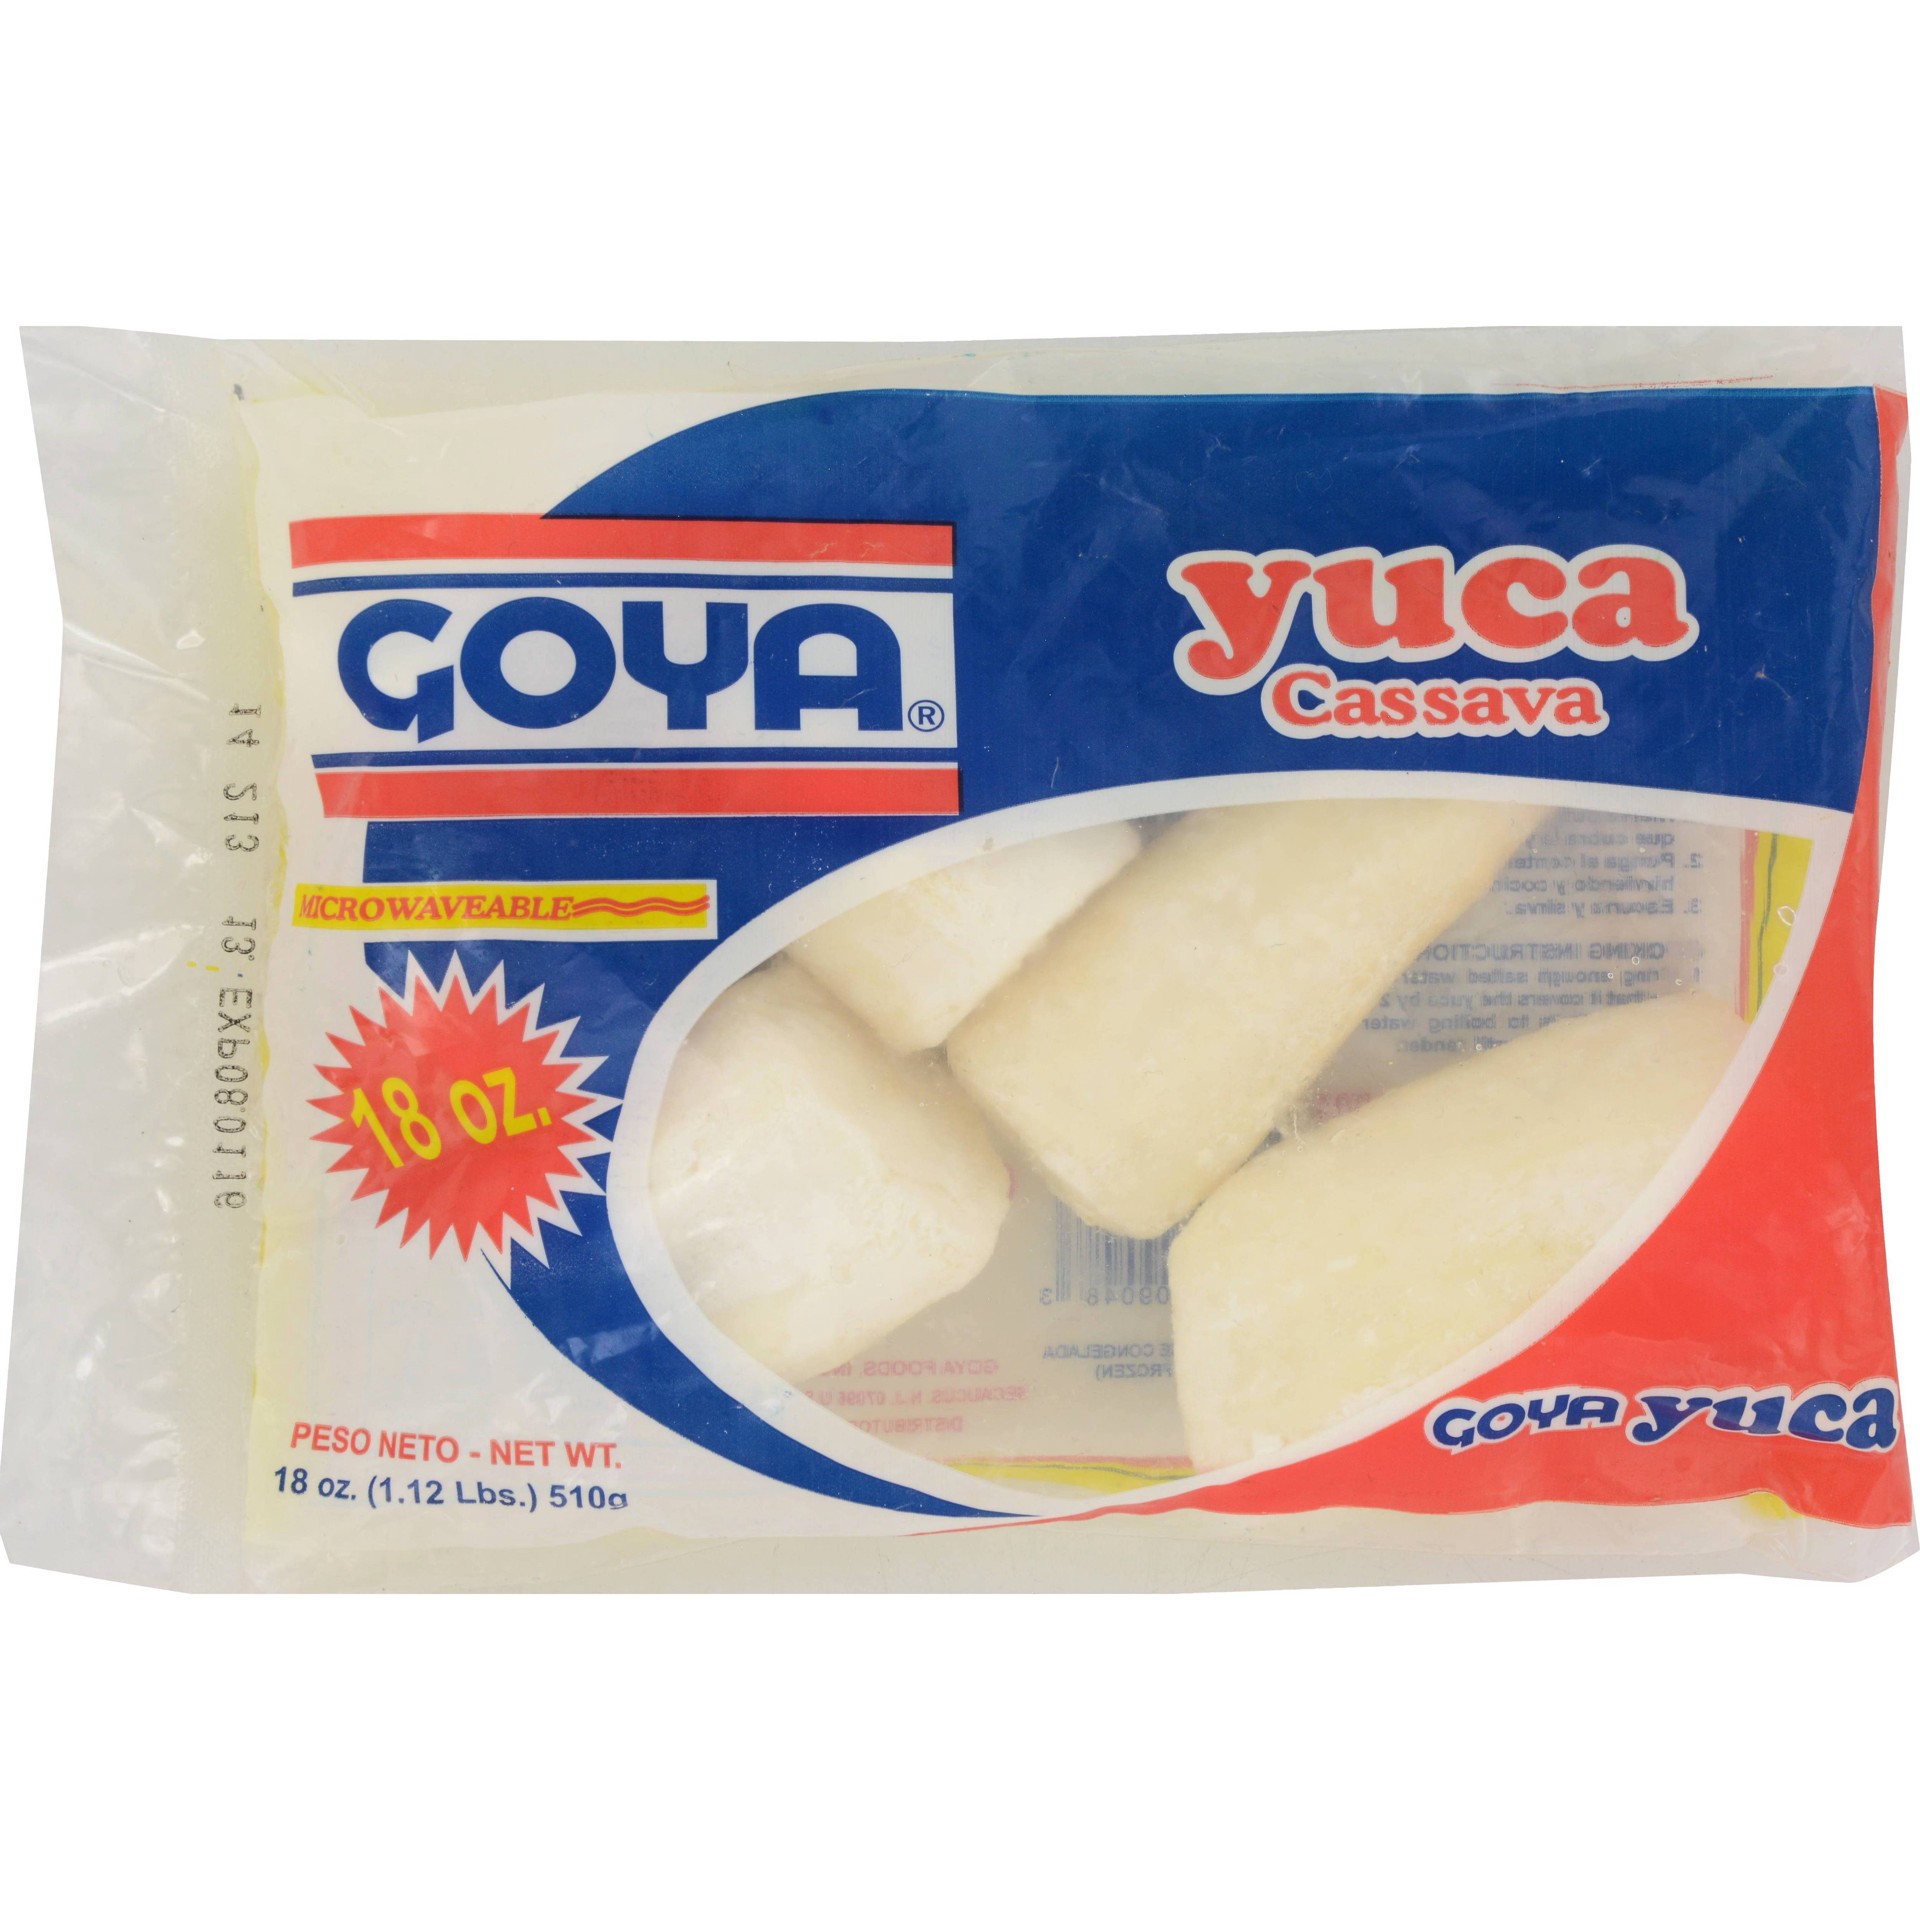 slide 1 of 2, Goya Yuca, 18 oz